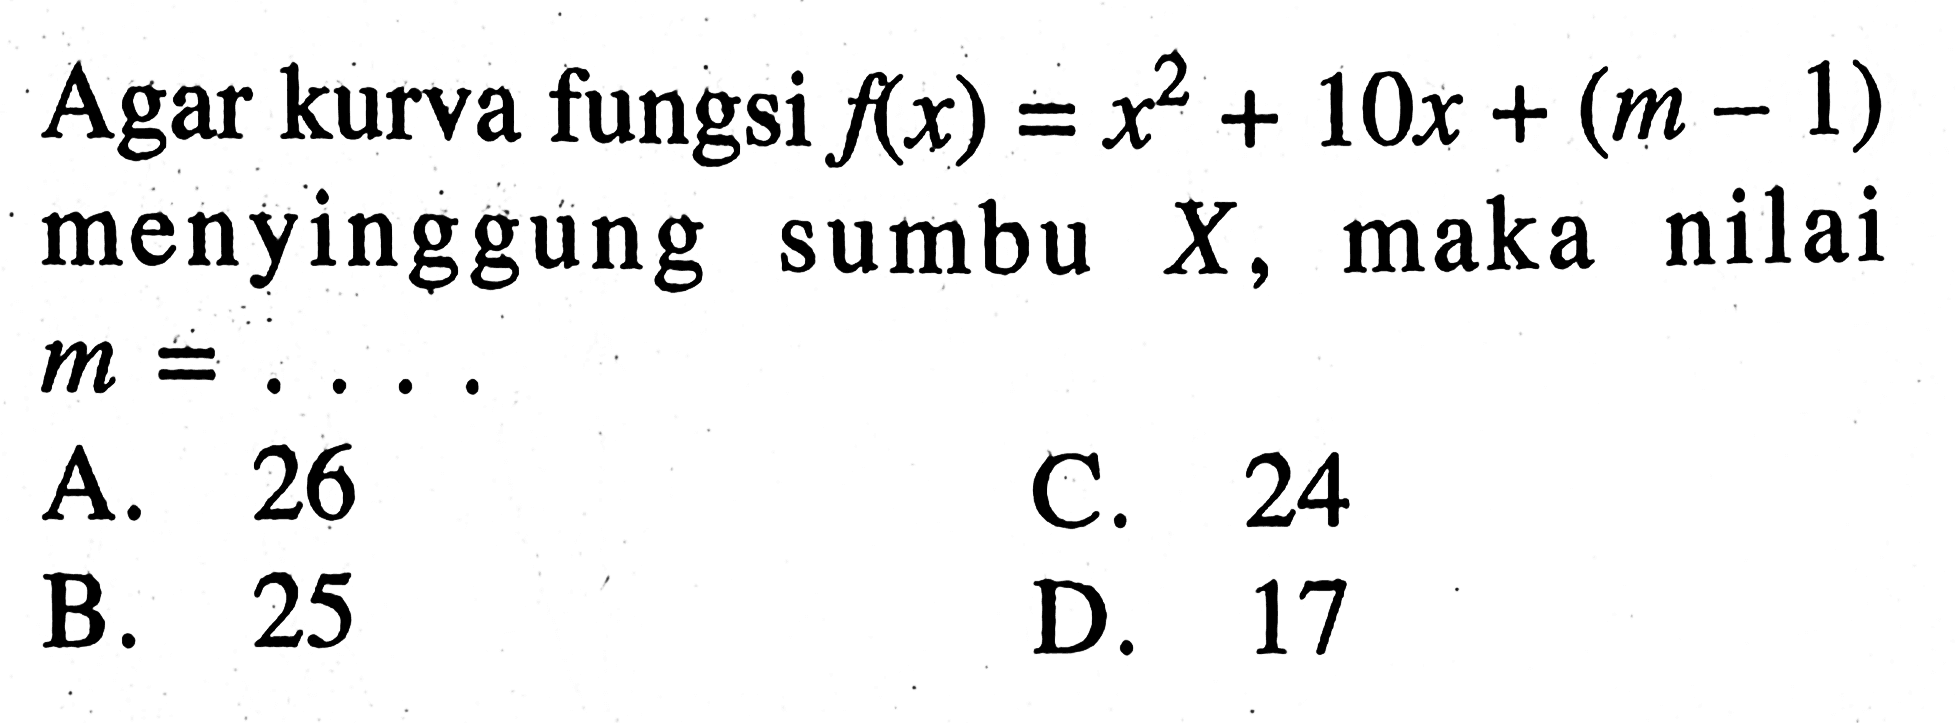 Agar kurva fungsi f(x) = x^2 + 10x + (m - 1) menyinggung sumbu X, maka nilai m = .... A. 26 B. 25 C. 24 D. 17